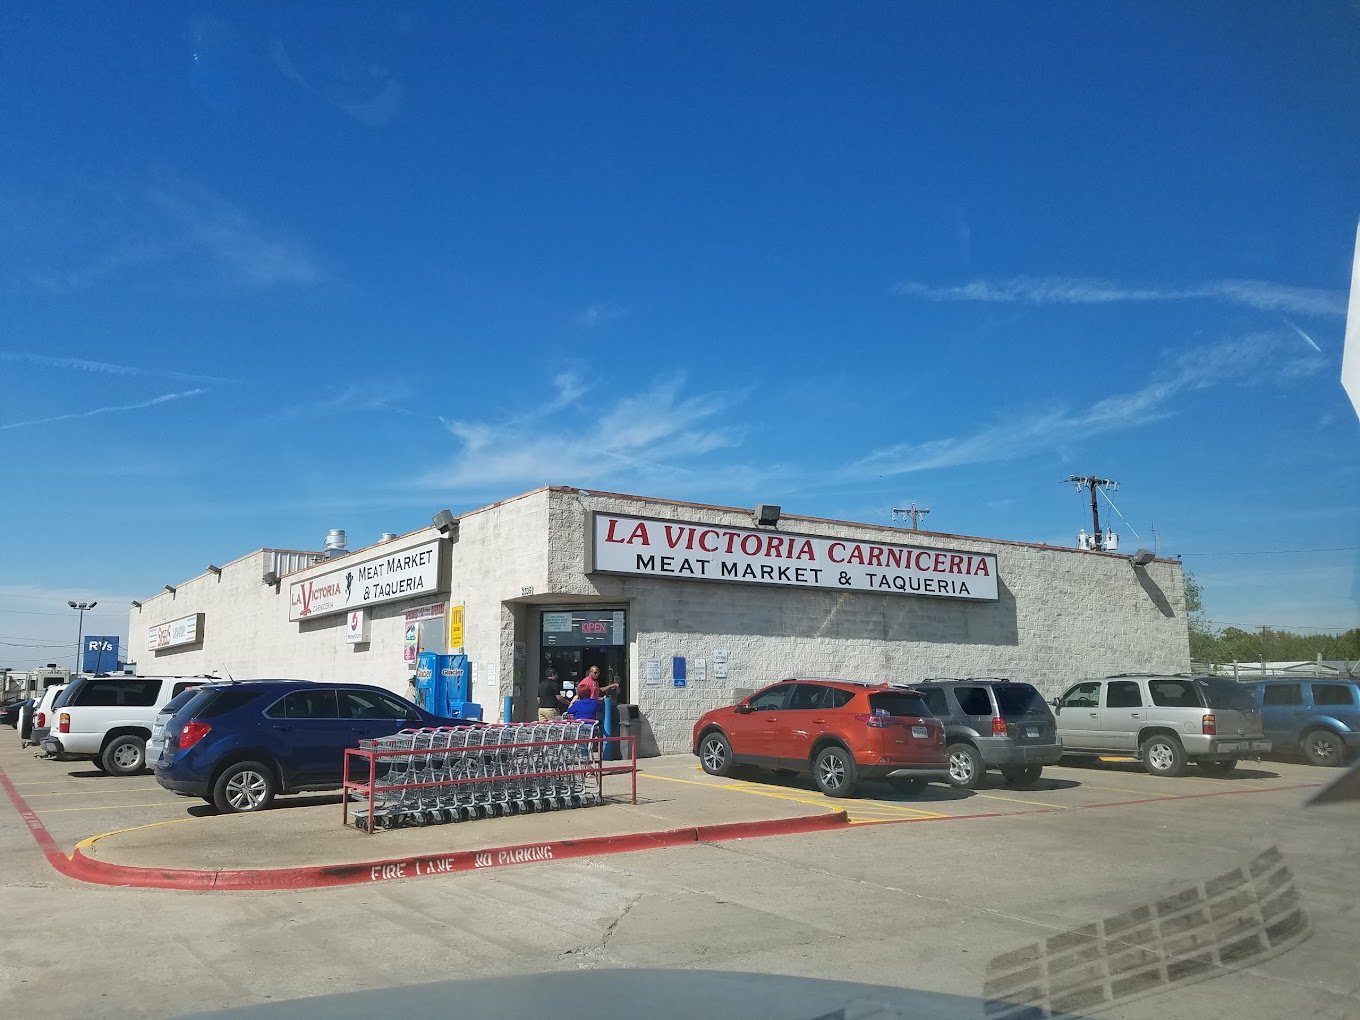 La Victoria Carniceria A Mexican Grocery Store in Dallas